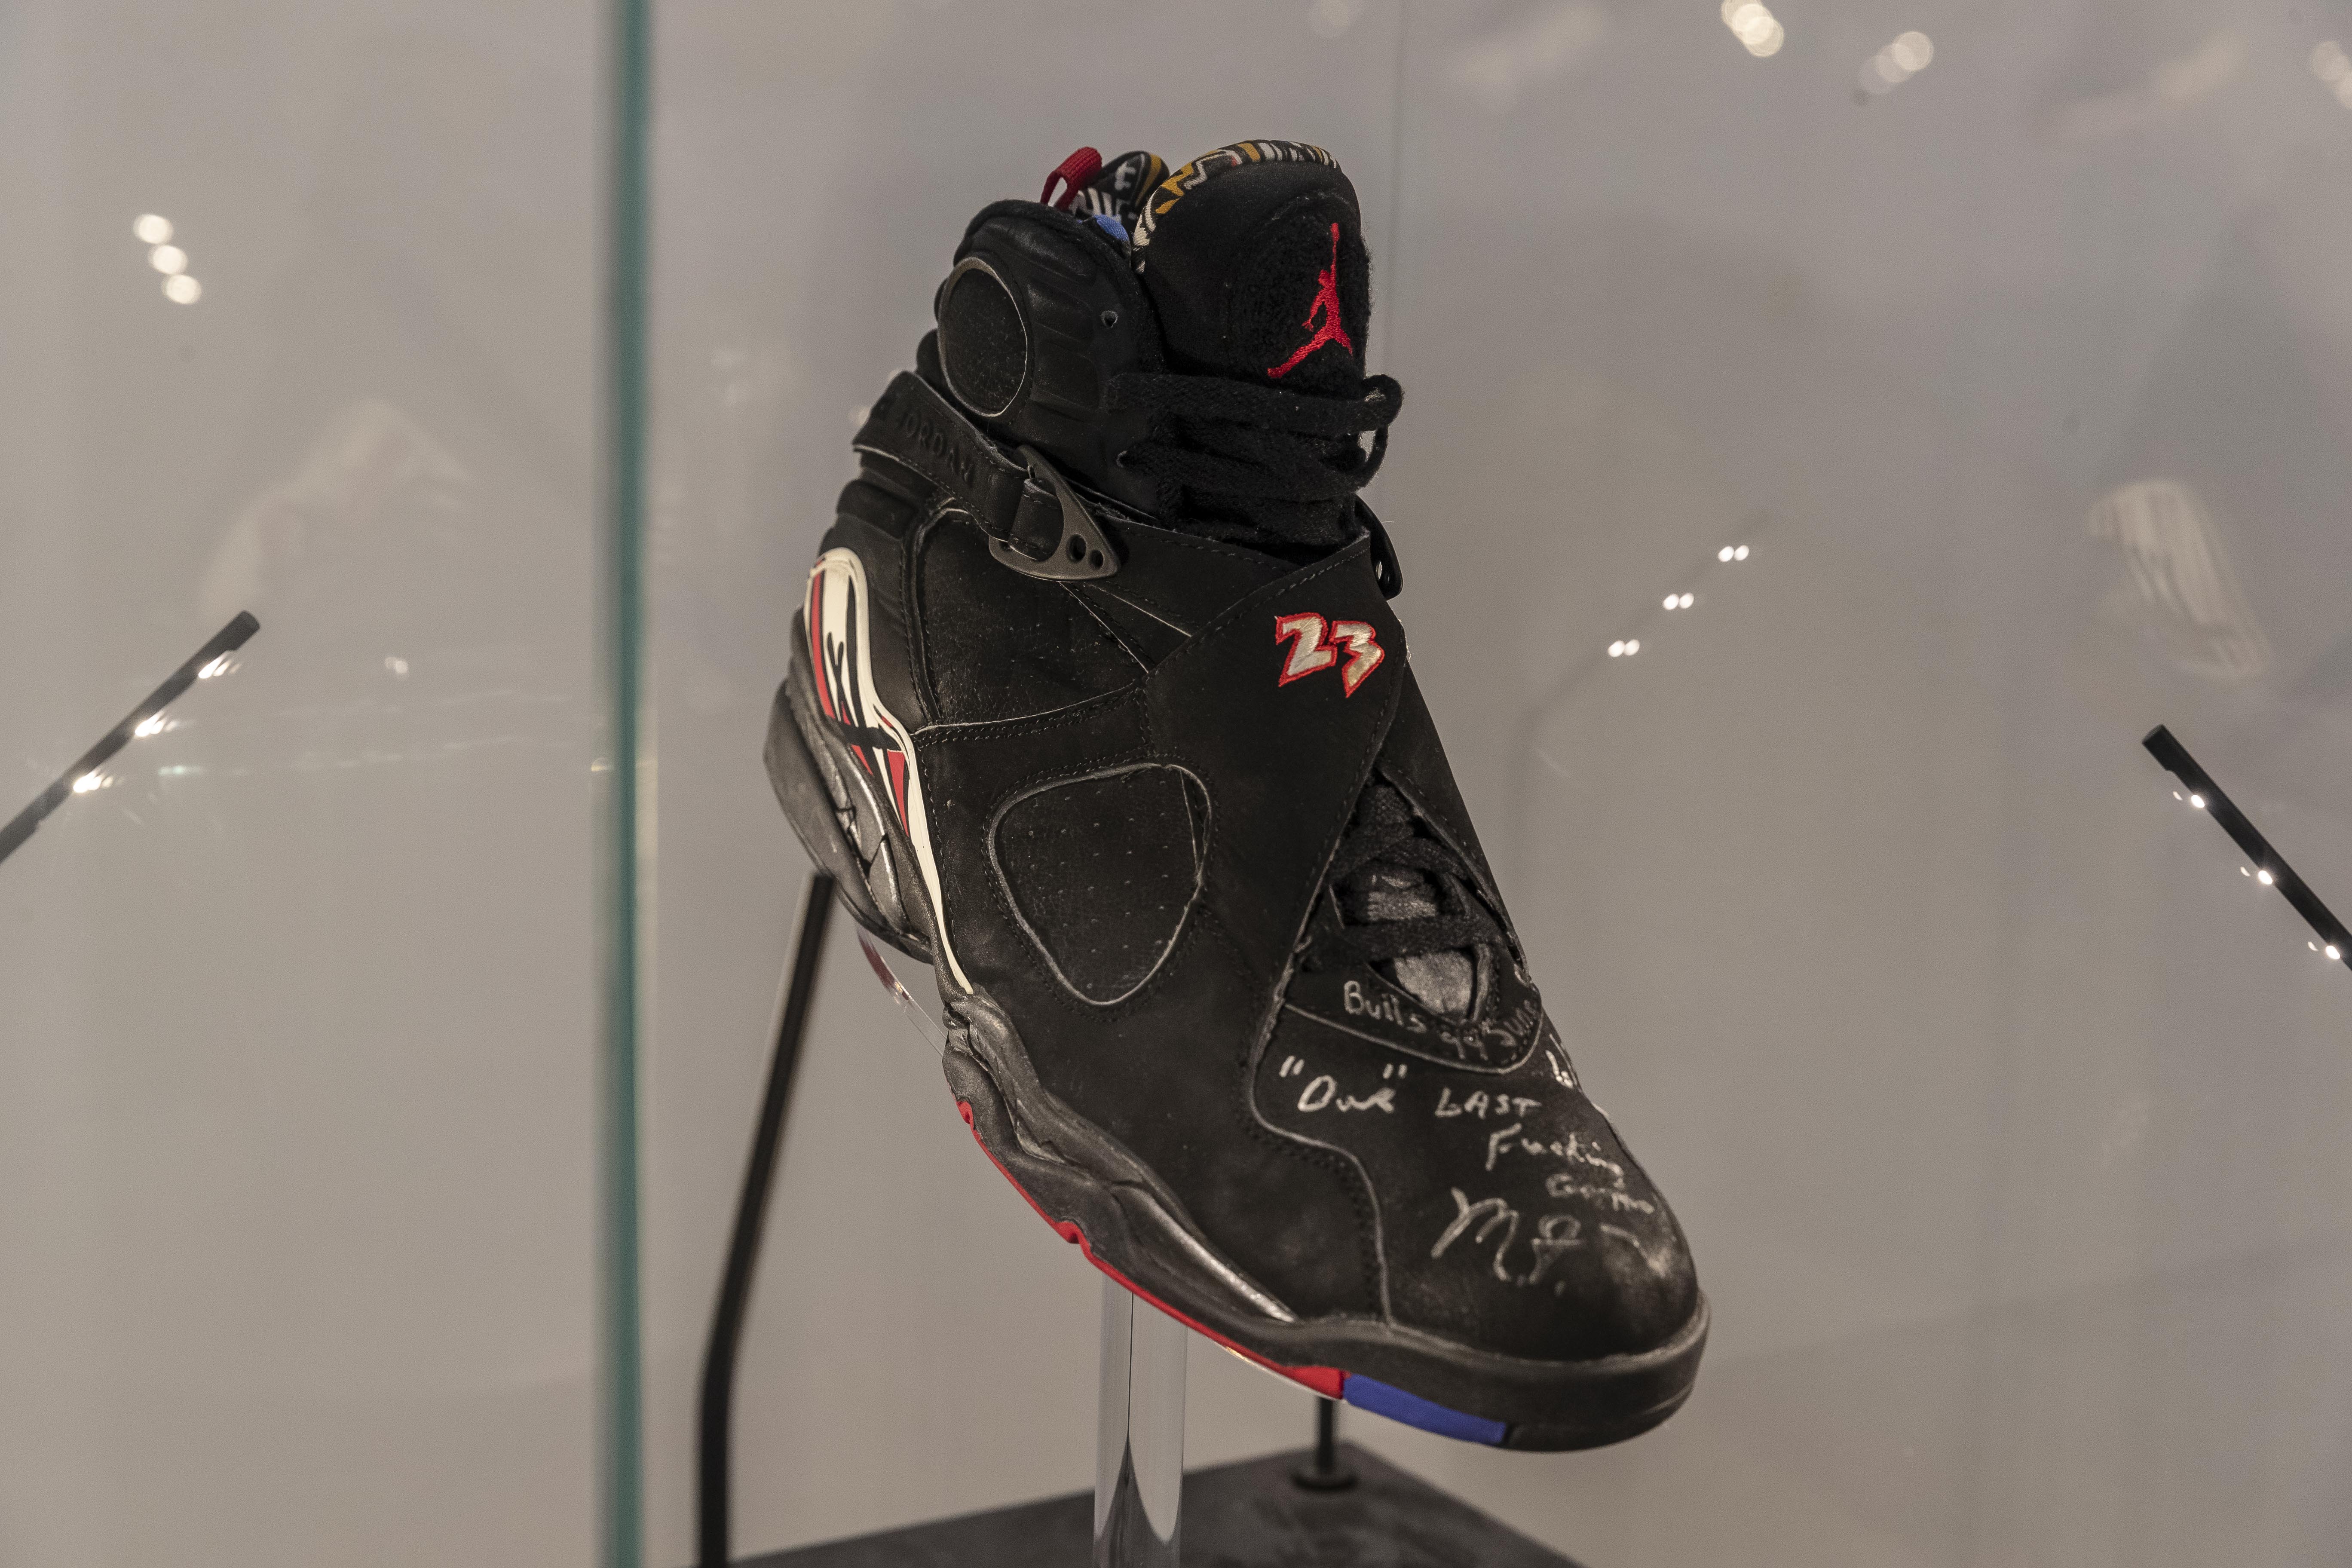 Michael Jordan '98 NBA Finals Game 2 Air Jordan 13s Sell For Over